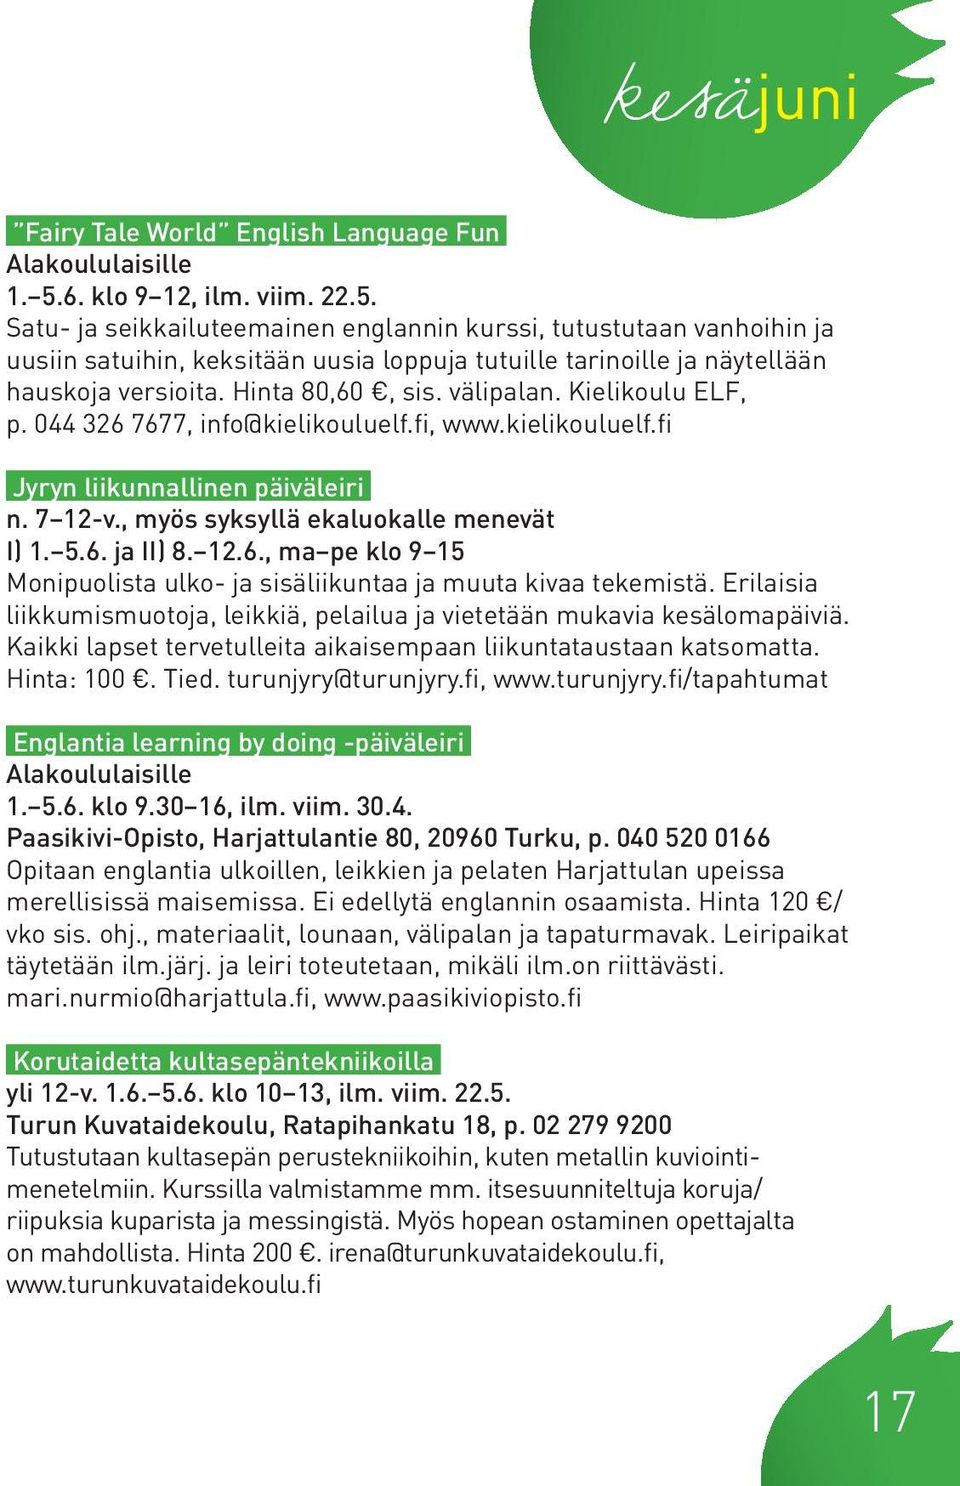 Hinta 80,60, sis. välipalan. Kielikoulu ELF, p. 044 326 7677, info@kielikouluelf.fi, www.kielikouluelf.fi Jyryn liikunnallinen päiväleiri n. 7 12-v., myös syksyllä ekaluokalle menevät I) 1. 5.6. ja II) 8.